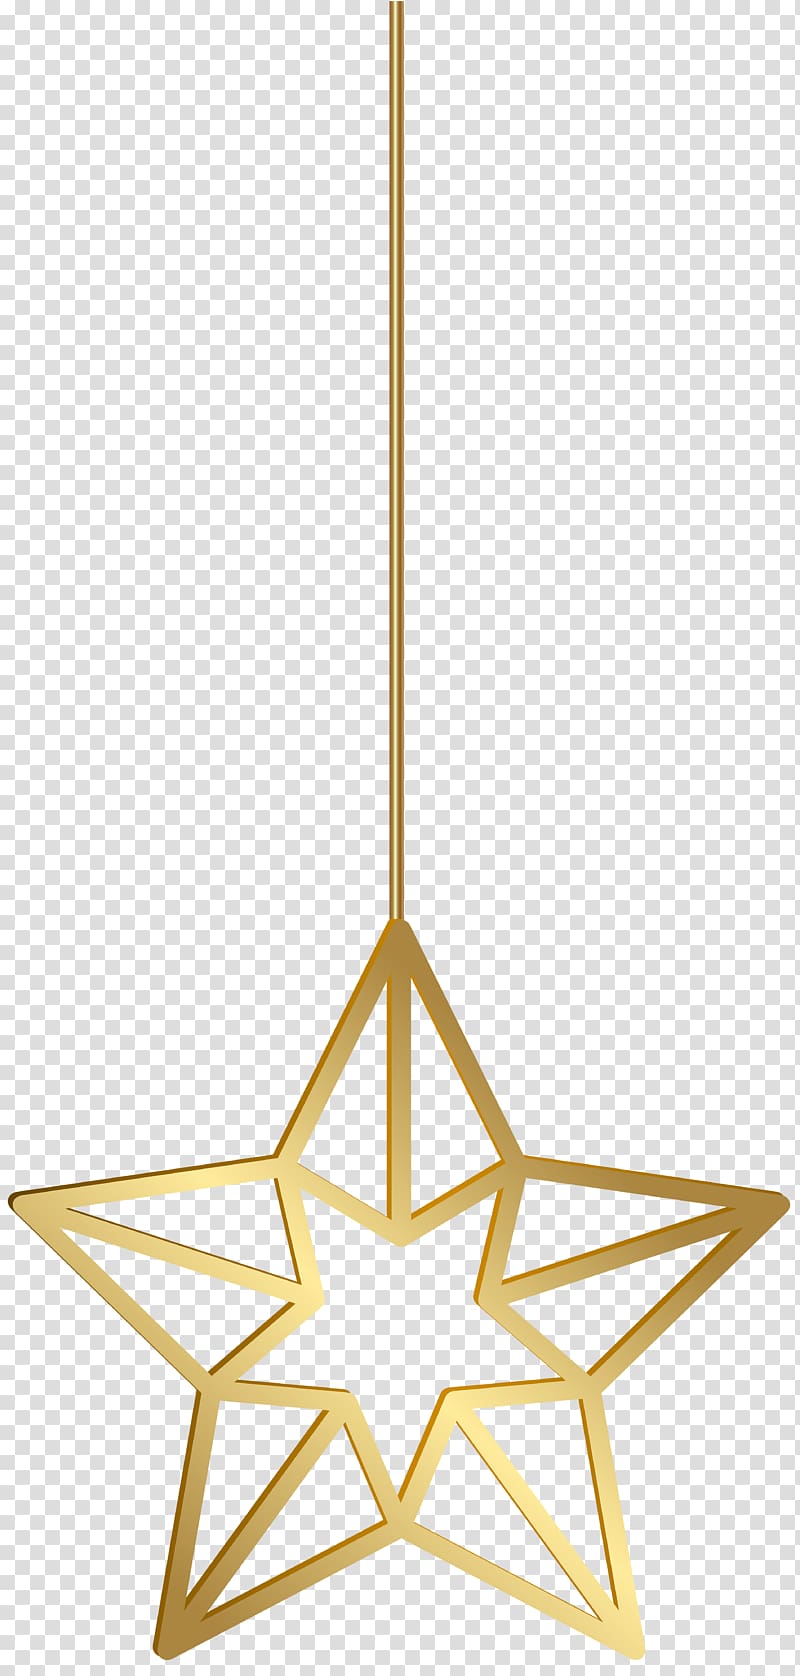 Hanging Star , hanger transparent background PNG clipart